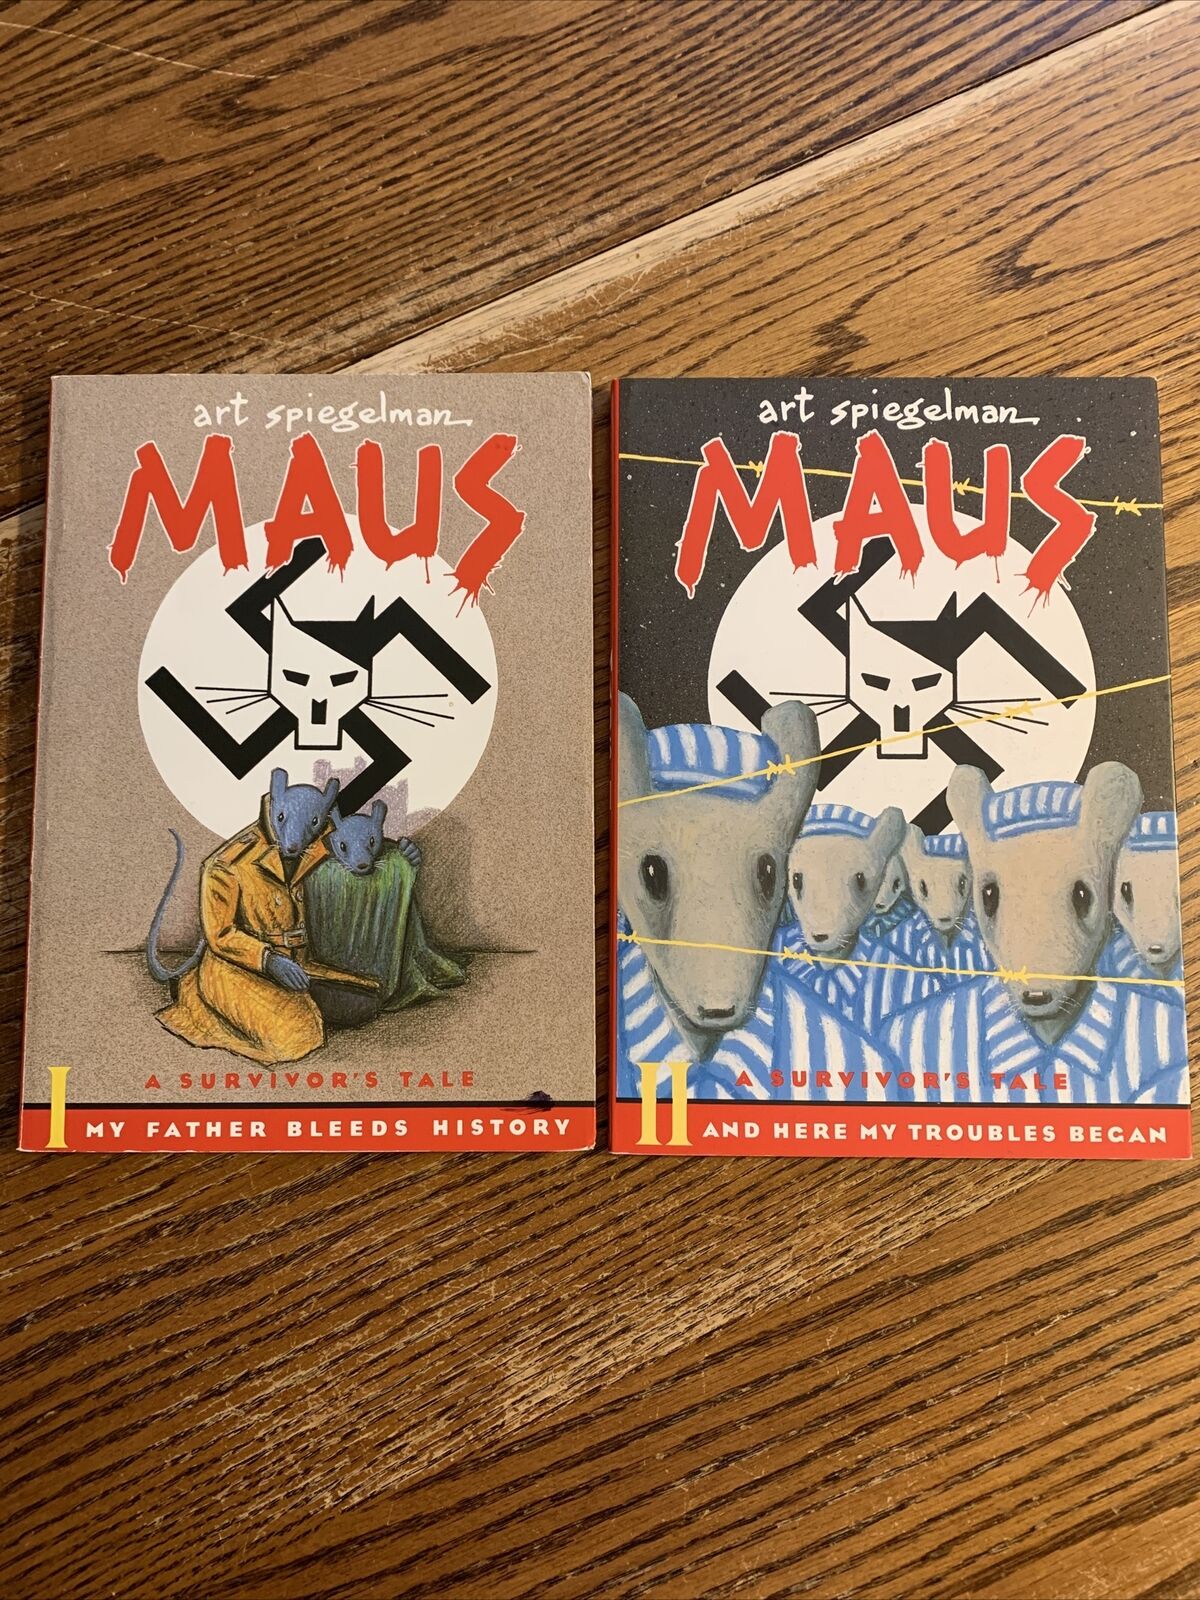 Maus Vol. 1-2 Art Spiegelman Graphic Novel Holocaust WW2 World War II